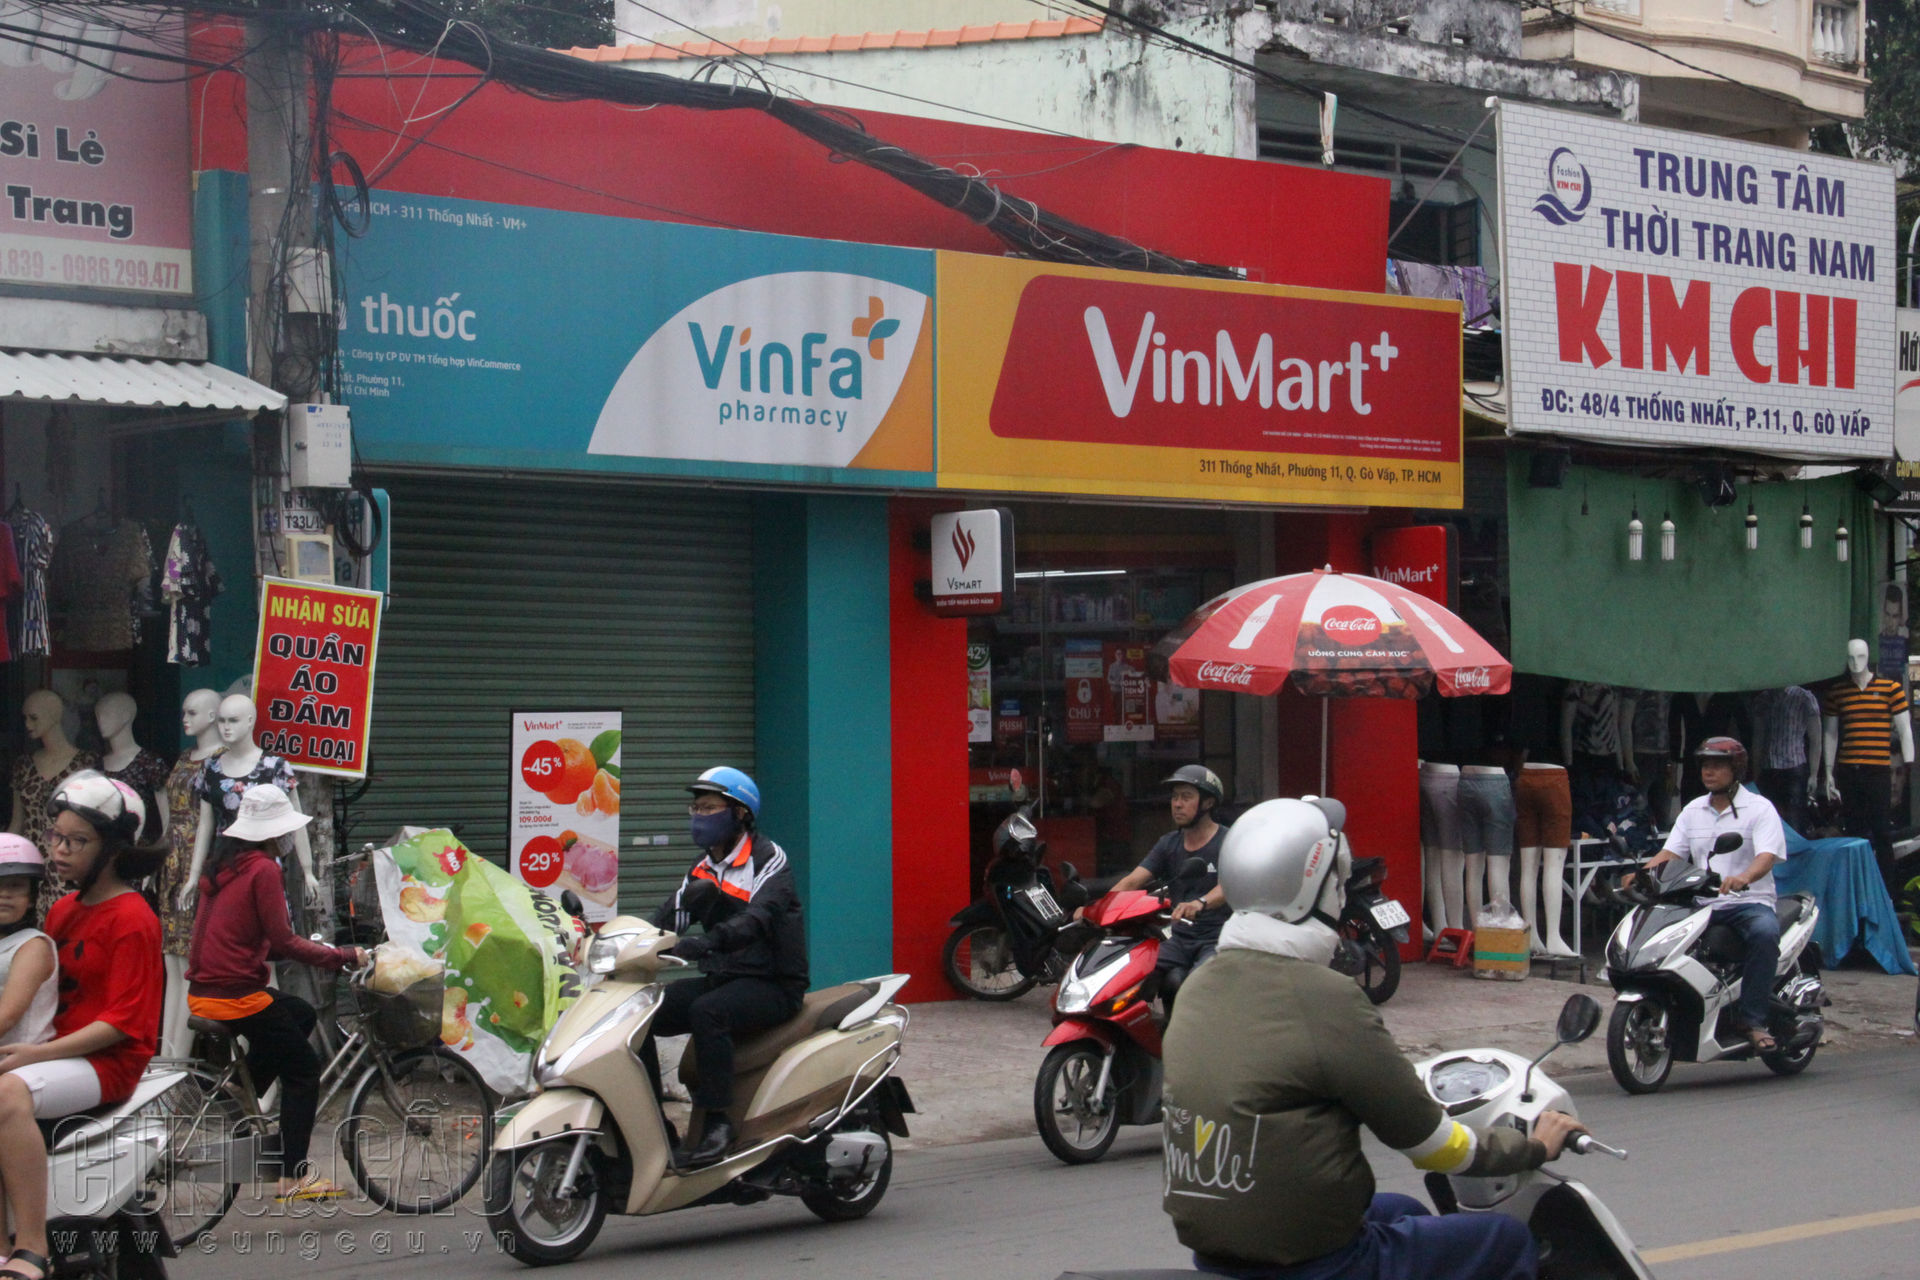 Nhà thuốc VinFa của Vingroup tại TP.HCM vẫn chưa thể mở bán